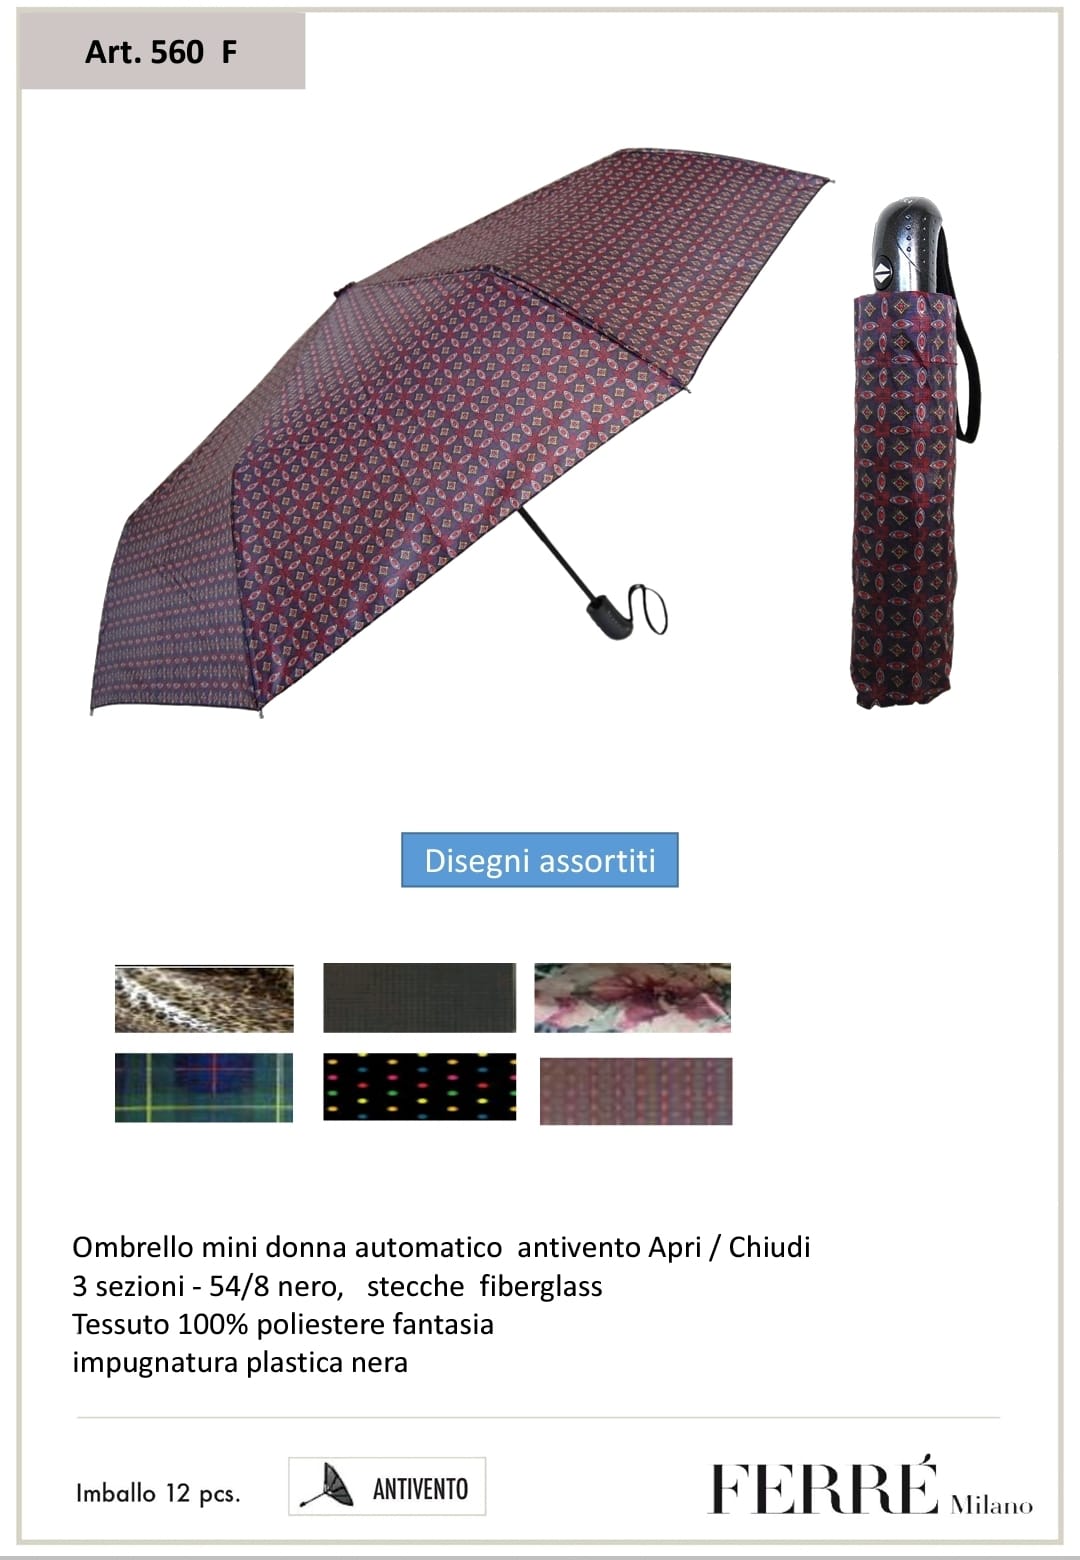 €6,50 al pezzo FERRE’ stock ombrelli 630 pezzi - A/I - RIF. TV6111